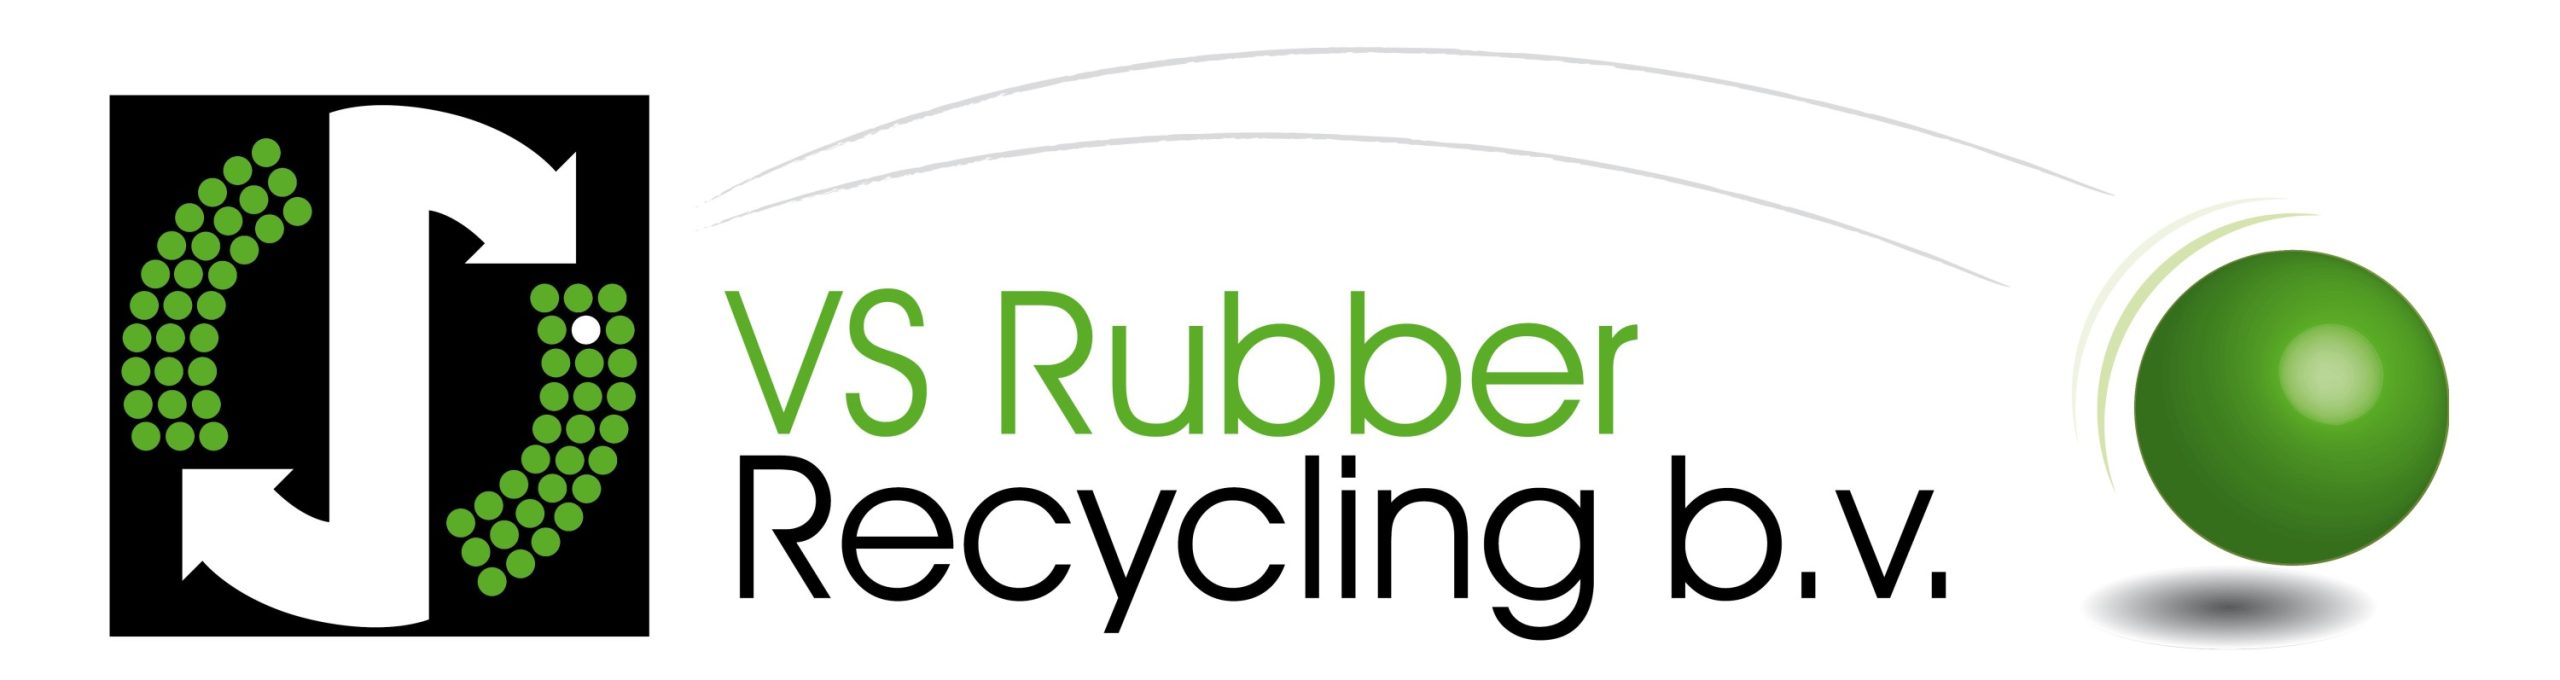 VS Rubber Recycling b.v.